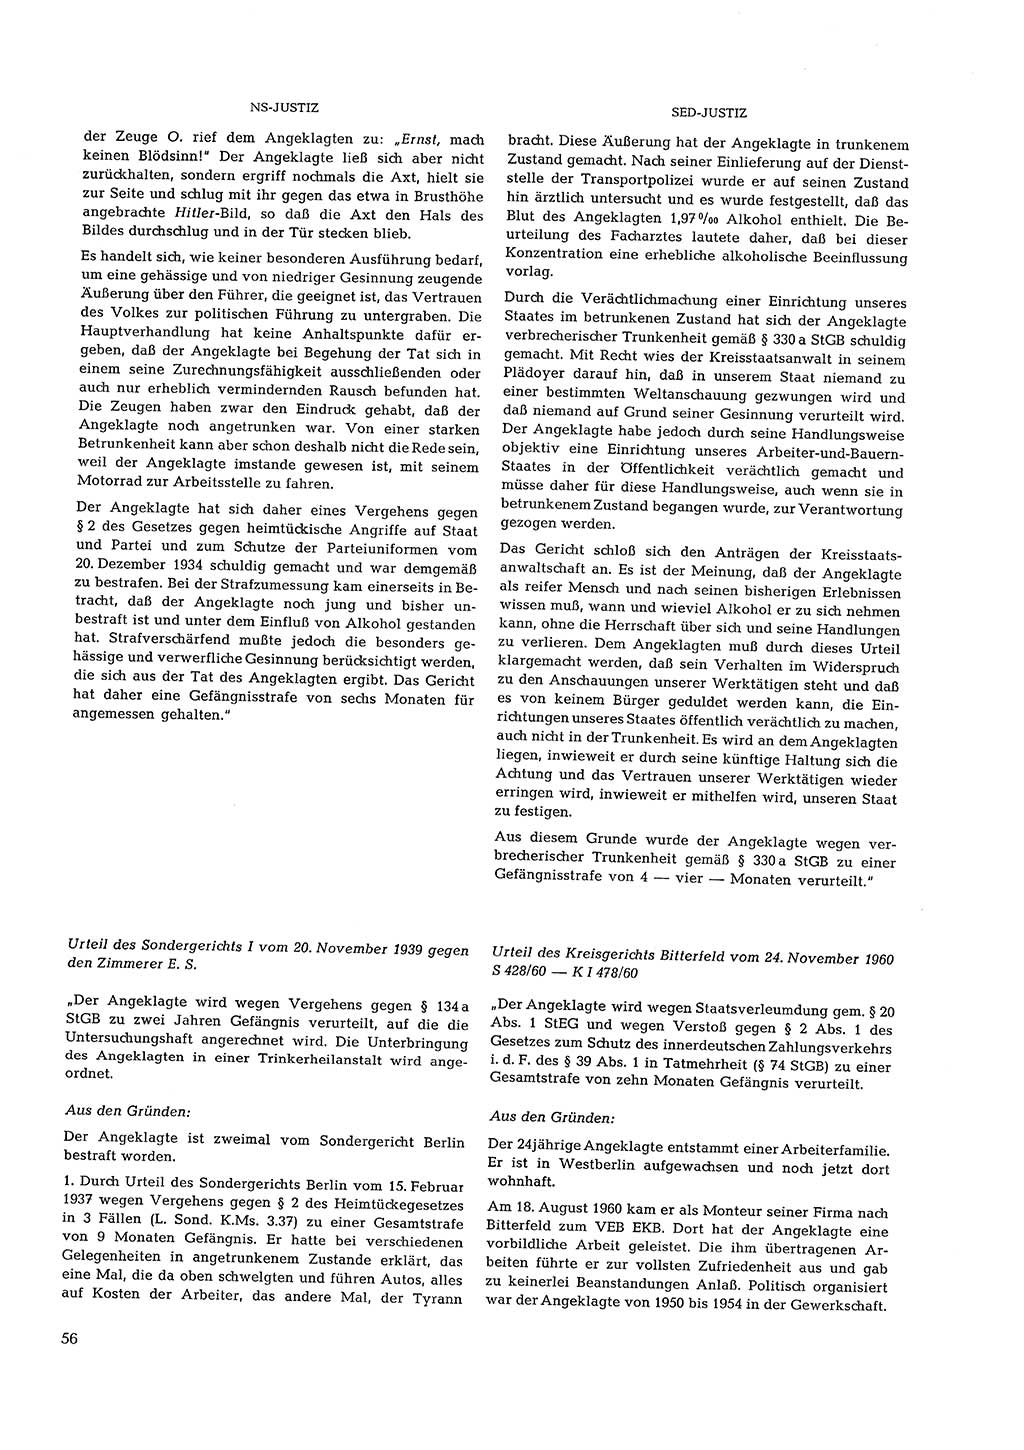 Partei-Justiz, Dokumentation über den nationalsozialistischen und kommunistischen Rechtsmißbrauch in Deutschland 1933-1963, Seite 56 (Part.-Just. Dtl. natsoz. komm. 1933-1963, S. 56)